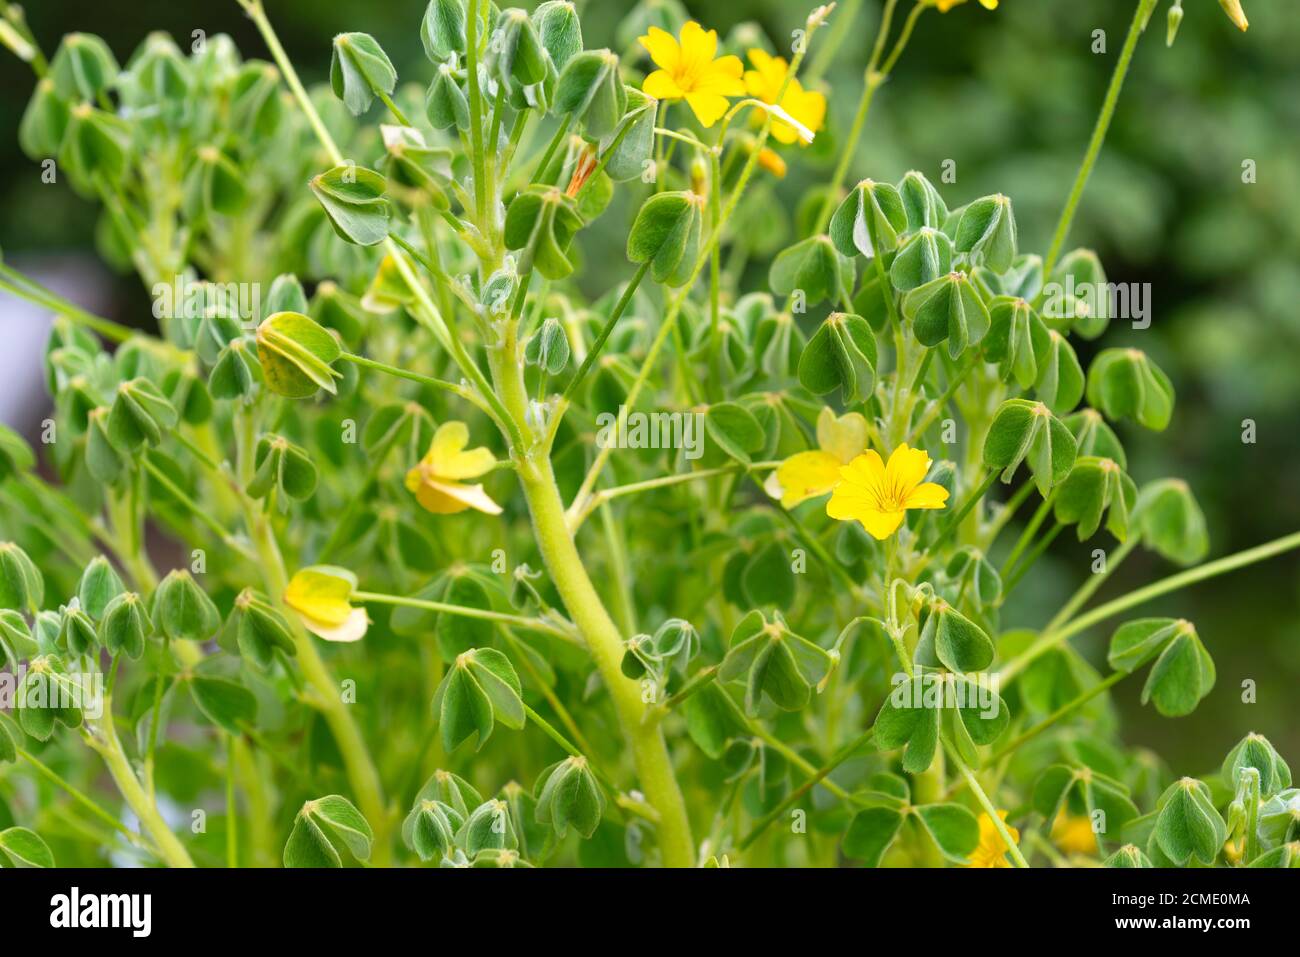 OCA Pflanze (Oxalis tuberosa) 'Oca Creme' wächst in einem Gemüsegarten.  VEREINIGTES KÖNIGREICH Stockfotografie - Alamy